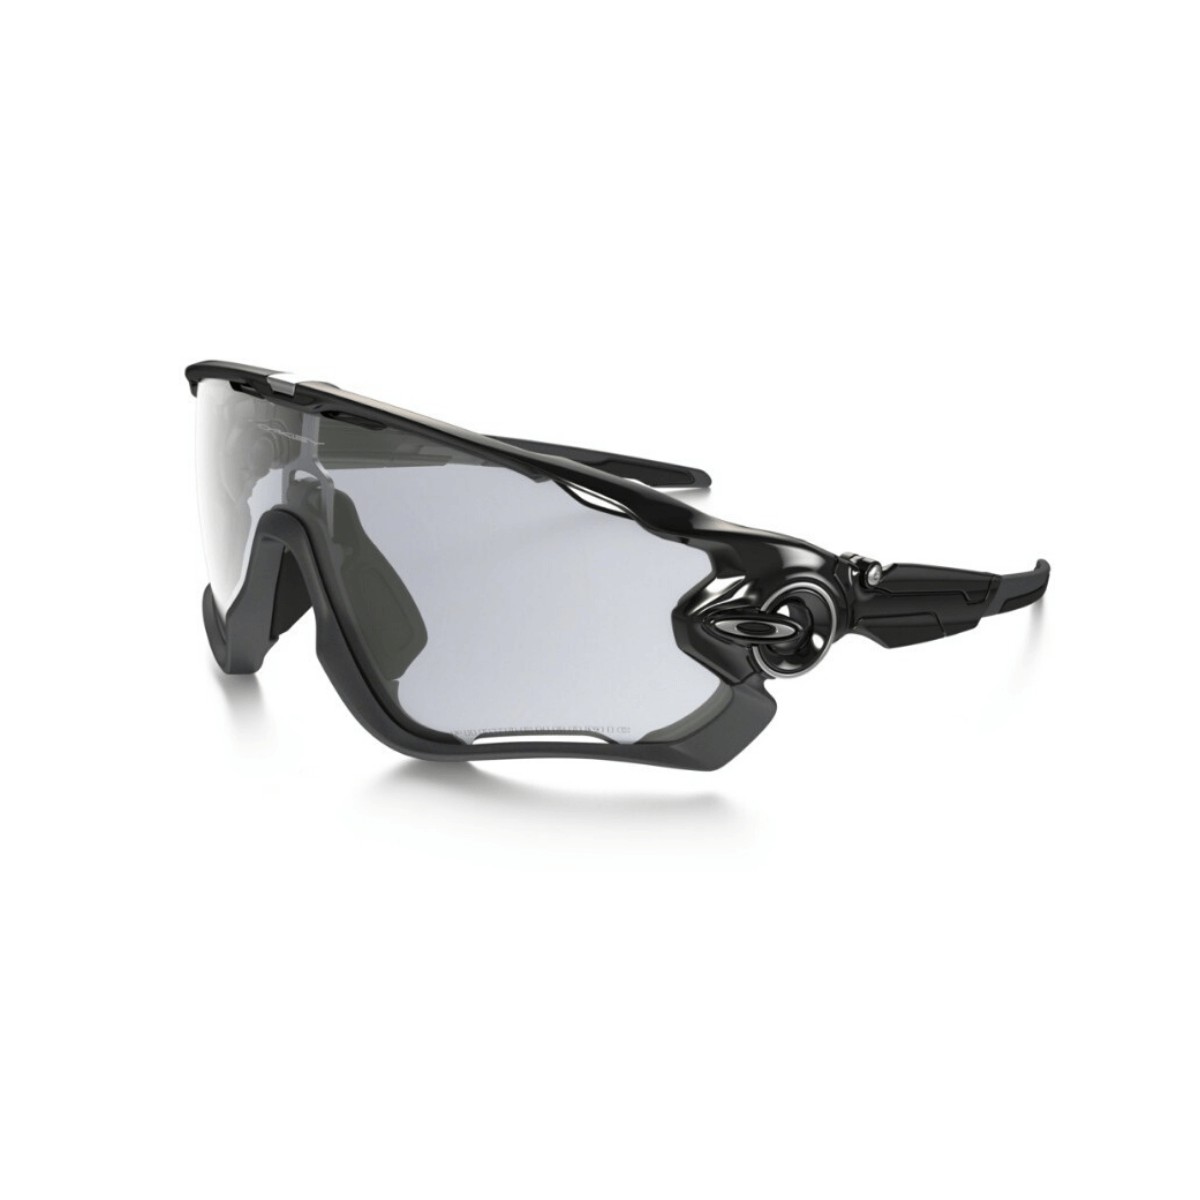 Oakley Jawbreaker Photochrome schwarze Fahrradbrille